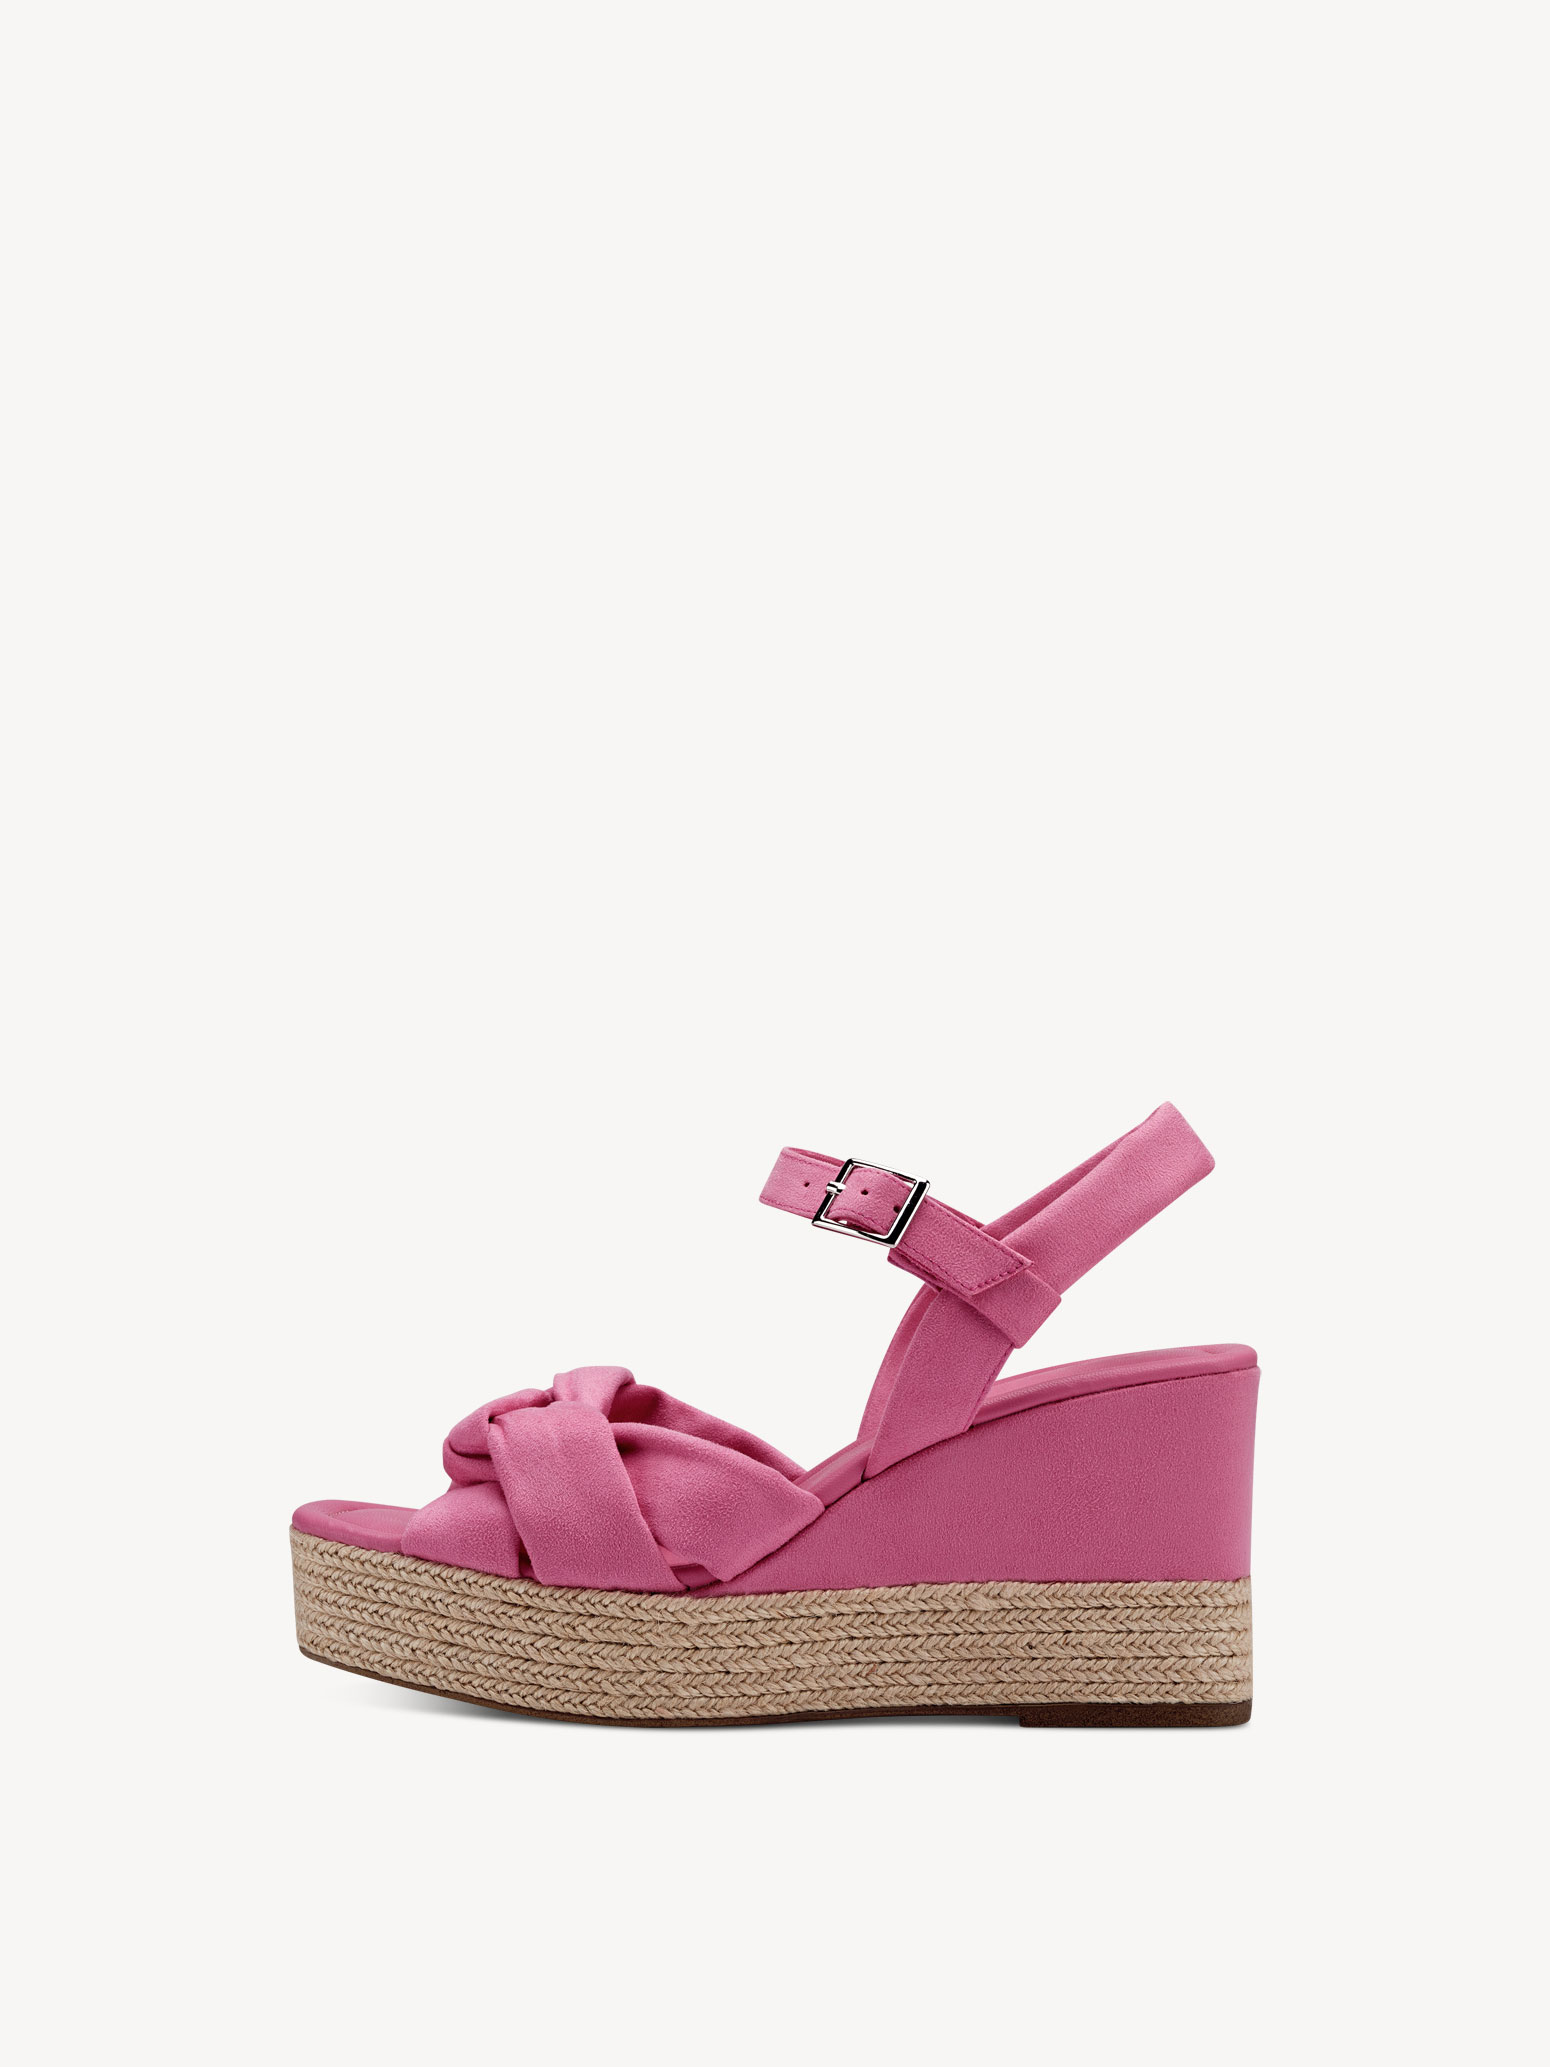 Sandalette rosa Gr. 39